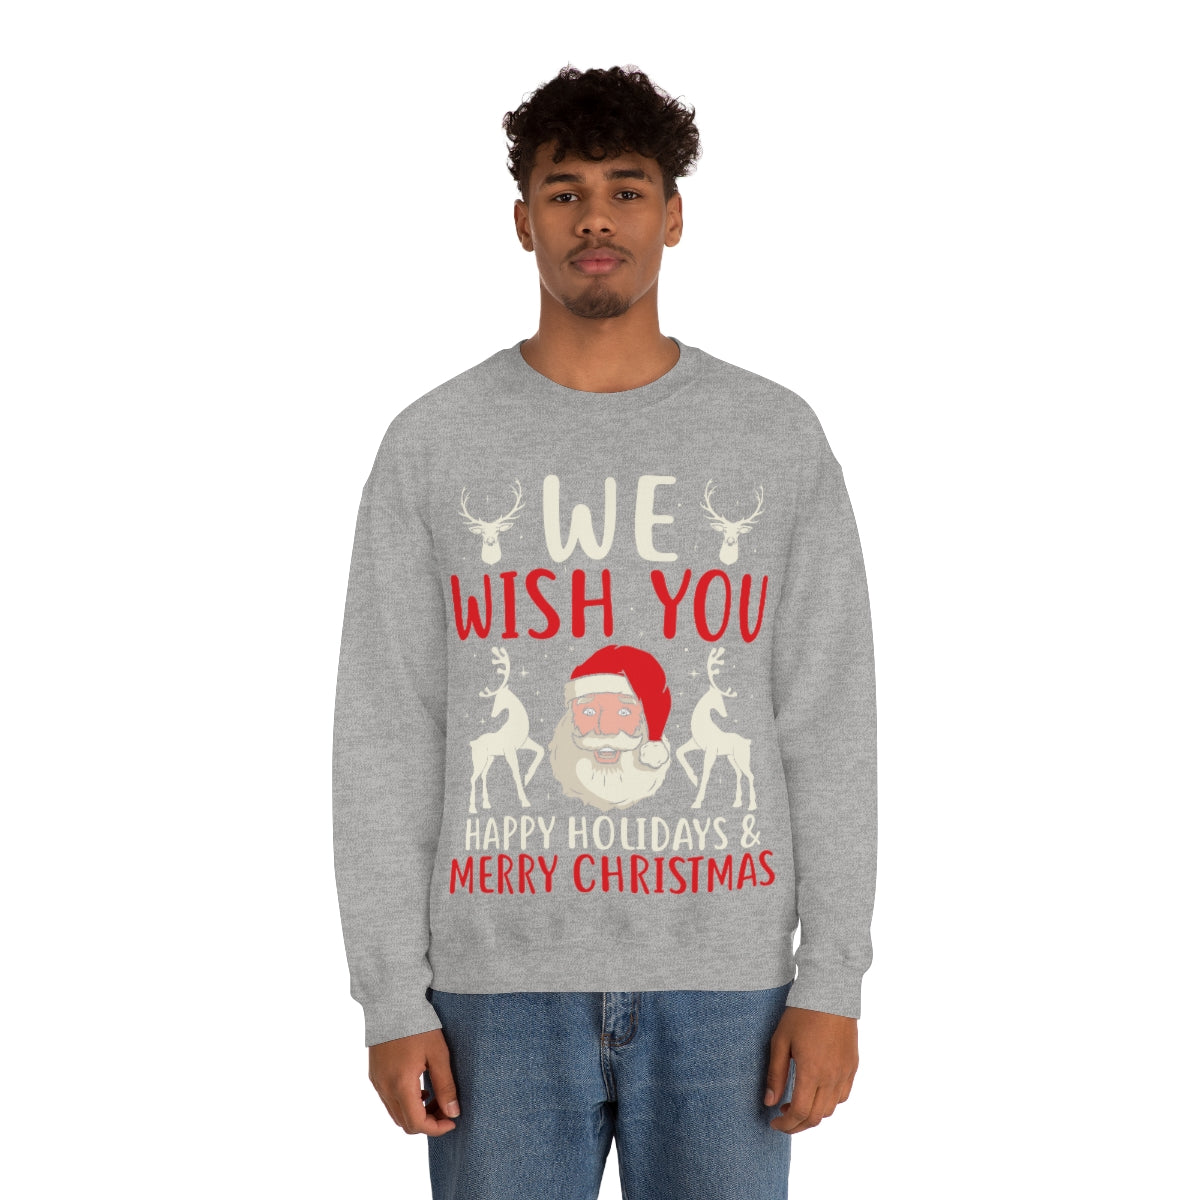 Merry Christmas Unisex Sweatshirts , Sweatshirt , Women Sweatshirt , Men Sweatshirt ,Crewneck Sweatshirt, WE WISH YOU HAPPY HOLIDAYS & MERRY CHRISTMAS Printify